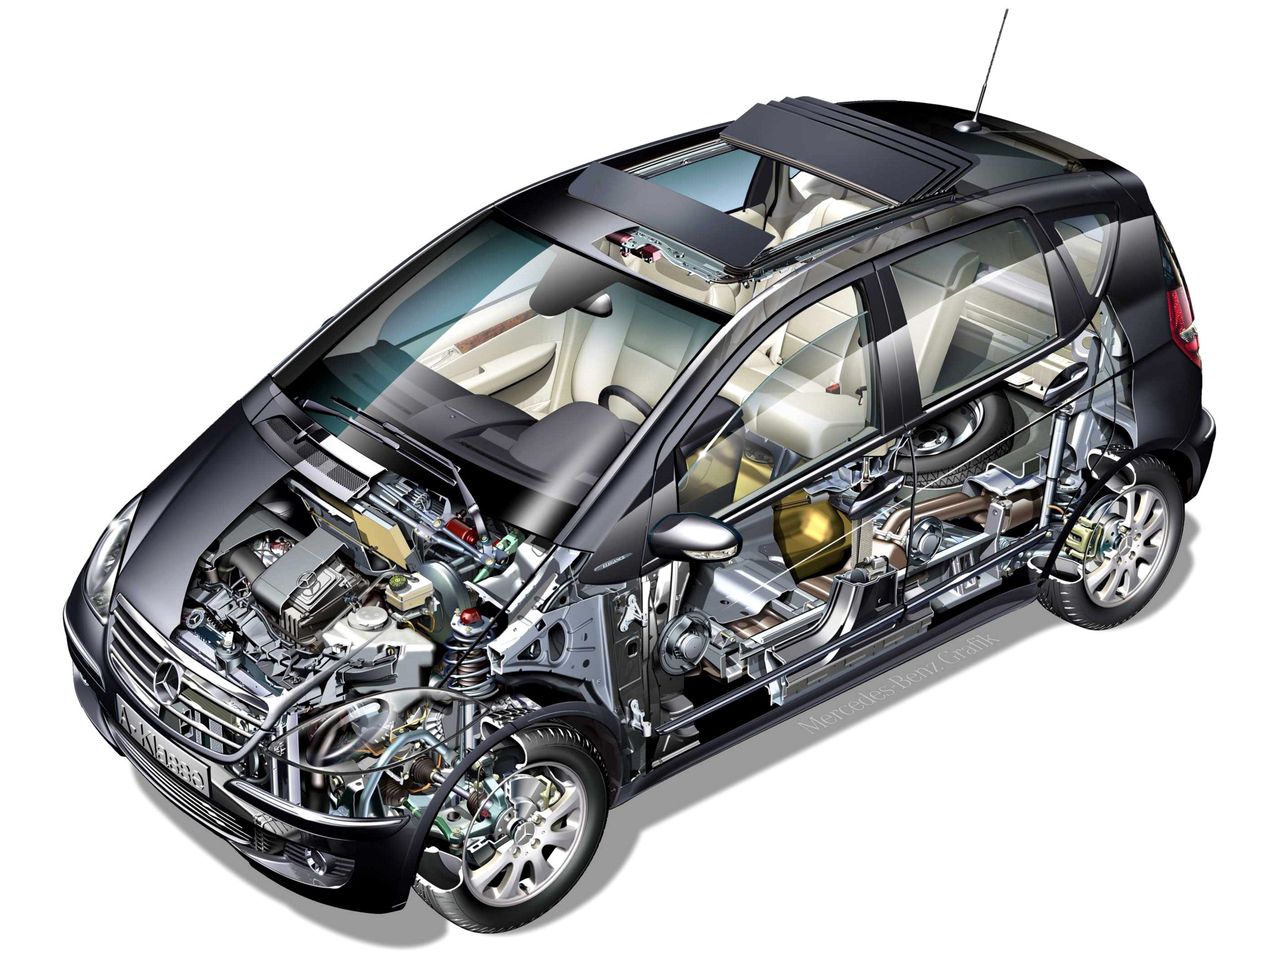 Niestety specyficzna konstrukcja auta utrudnia naprawy, w związku z tym są droższe niż w klasycznych hatchbackach.